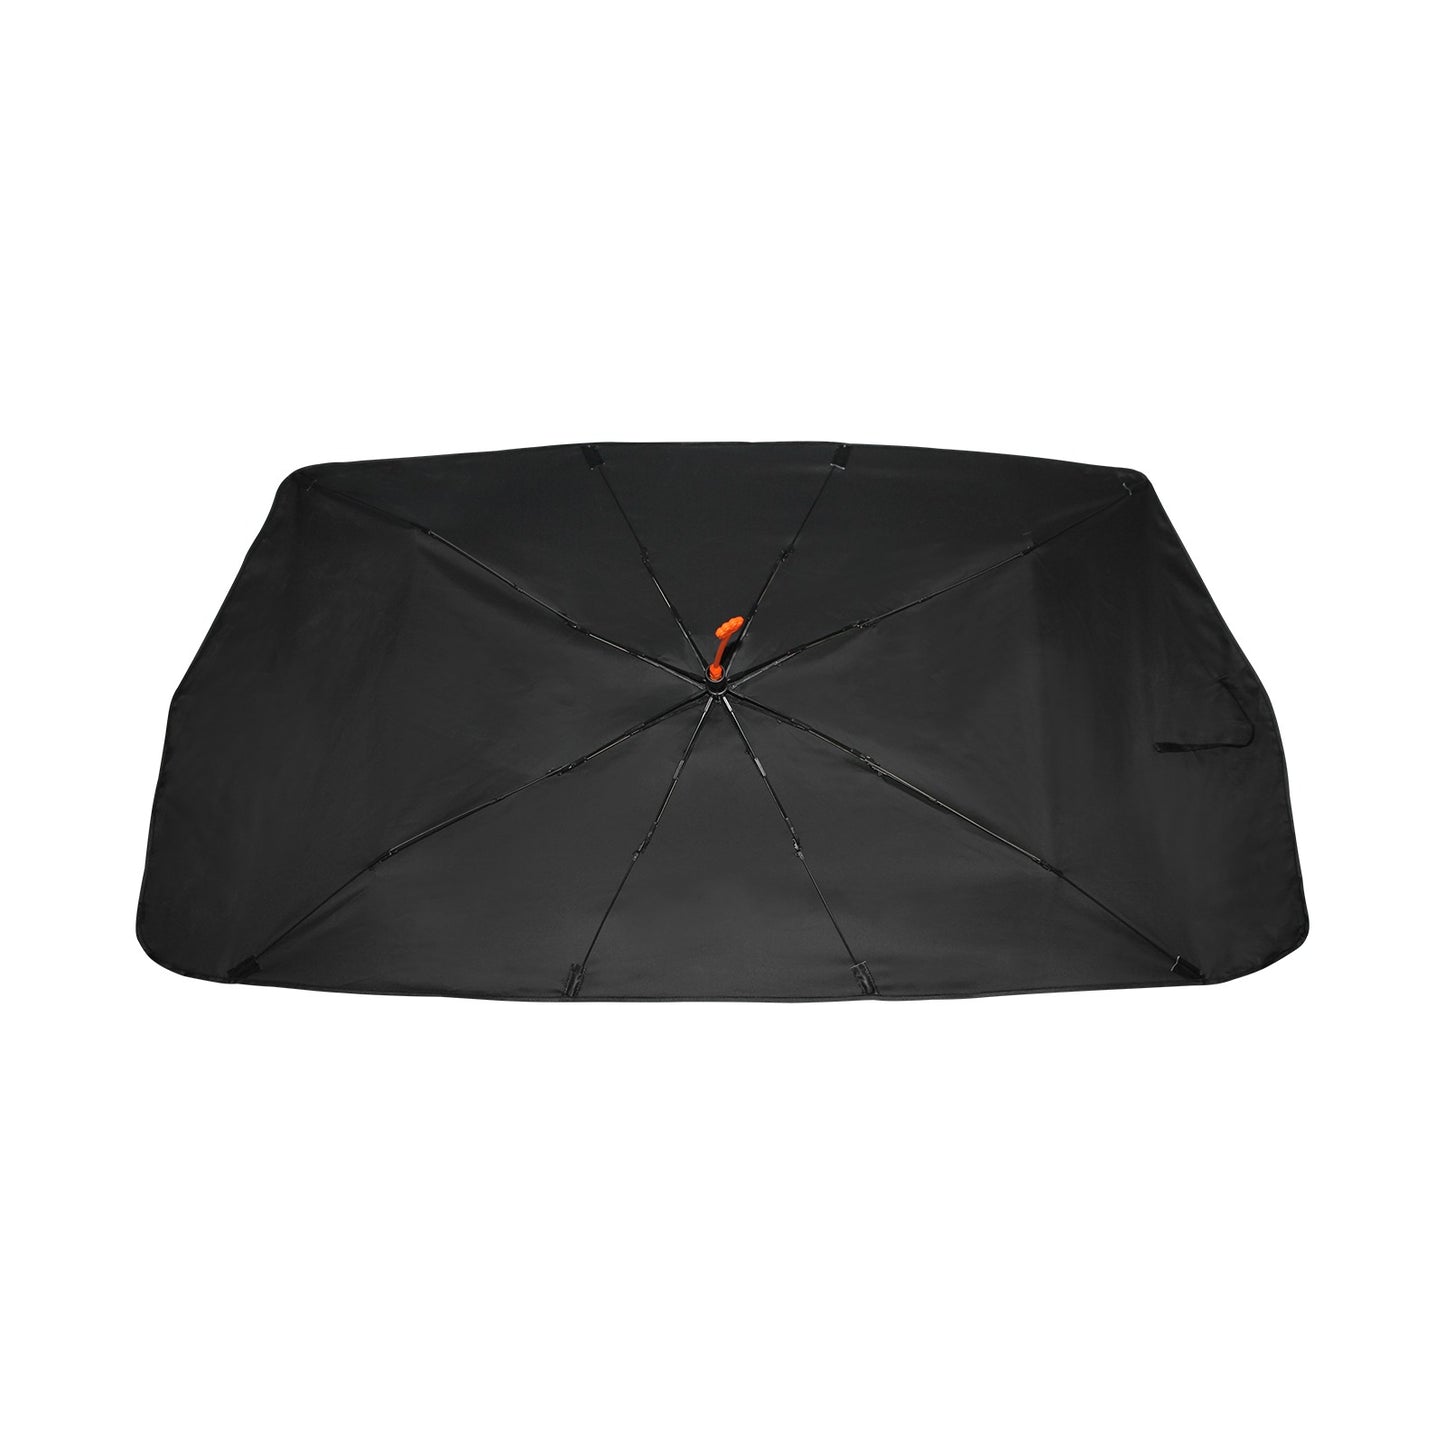 Customize airline travel shade Car Sun Shade Umbrella 58"x29"